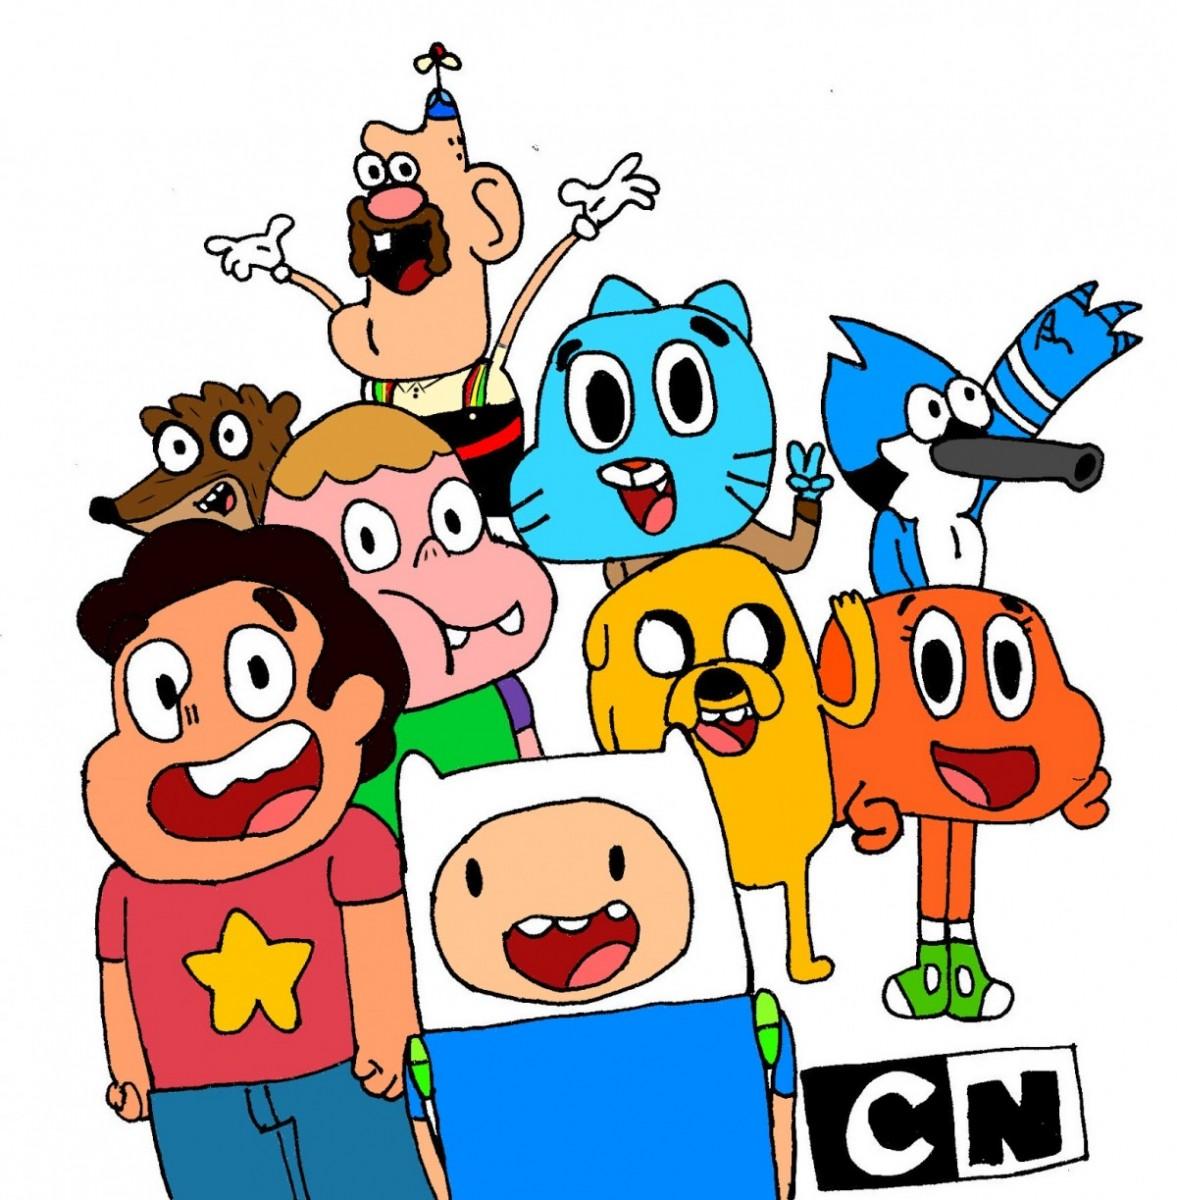 Cartoon Network celebra 25 anos no País em abril com programação especial